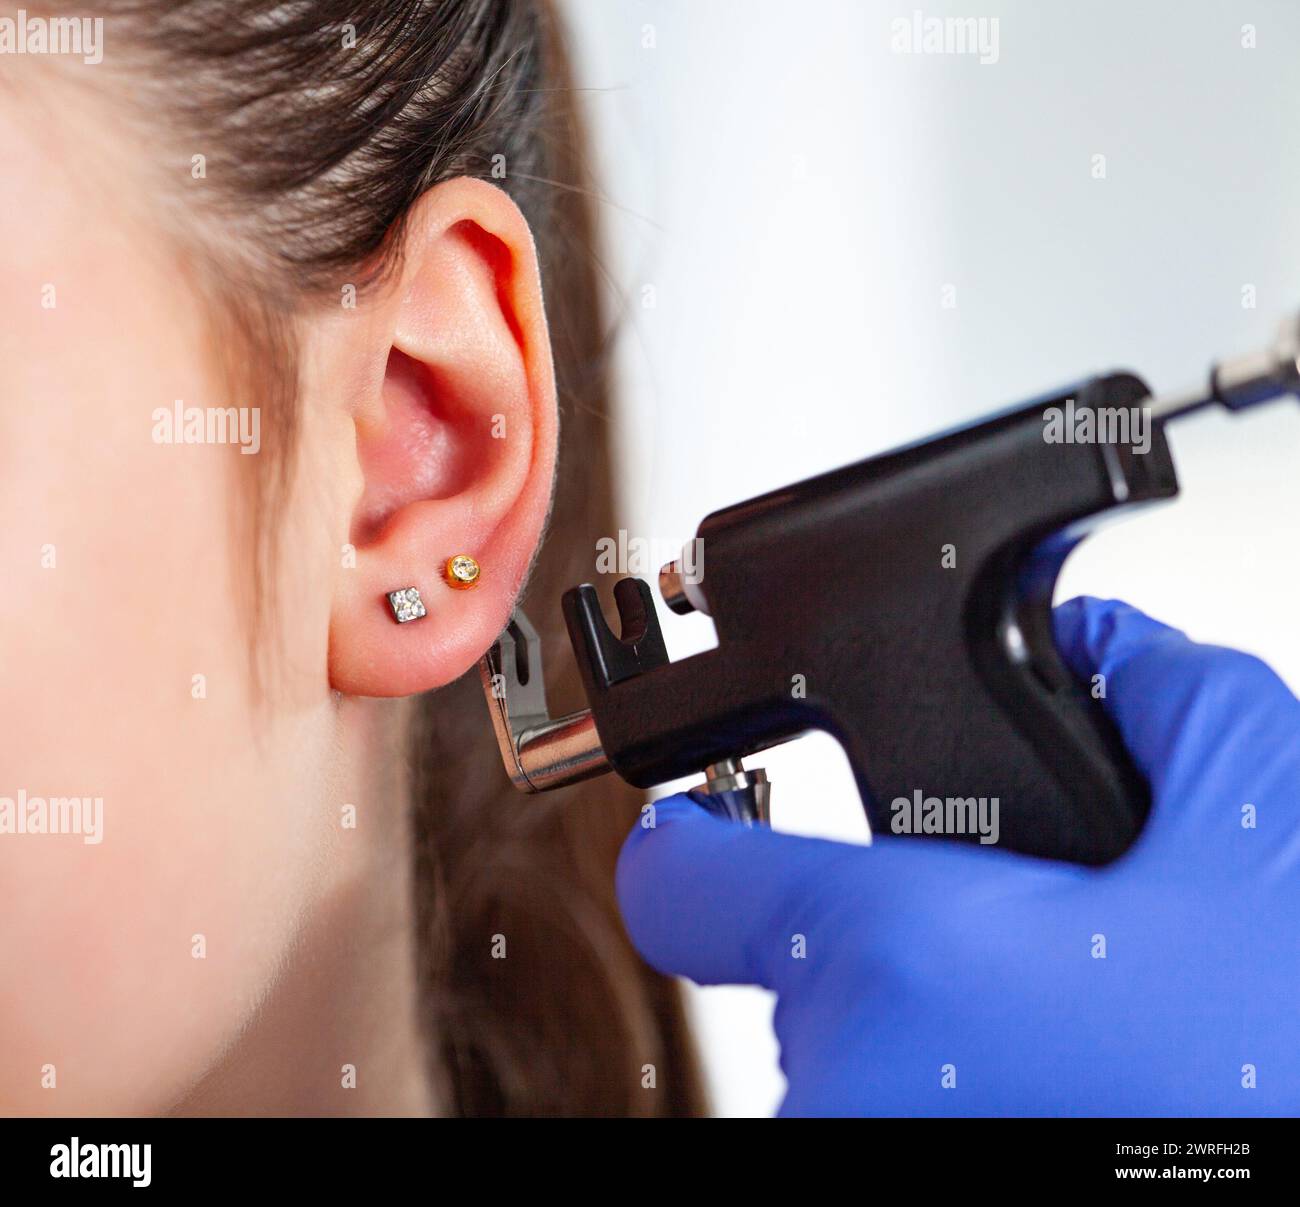 Un medico in guanti medici blu sterili perfora le orecchie di una giovane ragazza nello studio medico con una pistola perforante nera. Foto di alta qualità Foto Stock